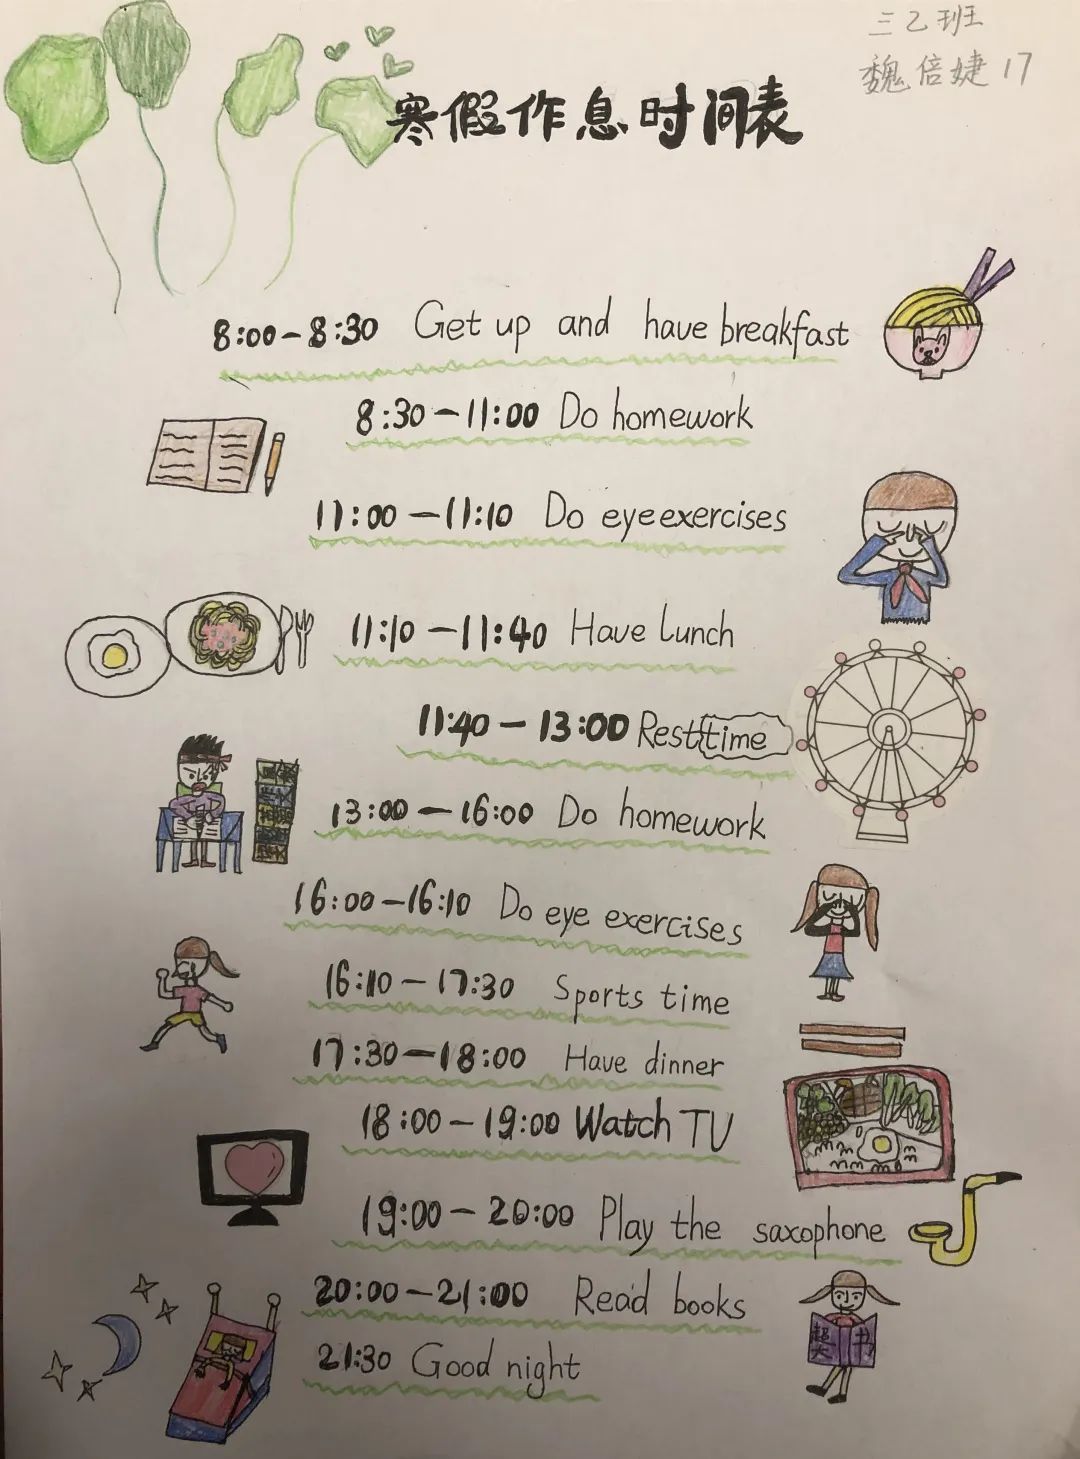 的作息时间表让大家看到了一个个不一样的又有想法的一至三年级的学生